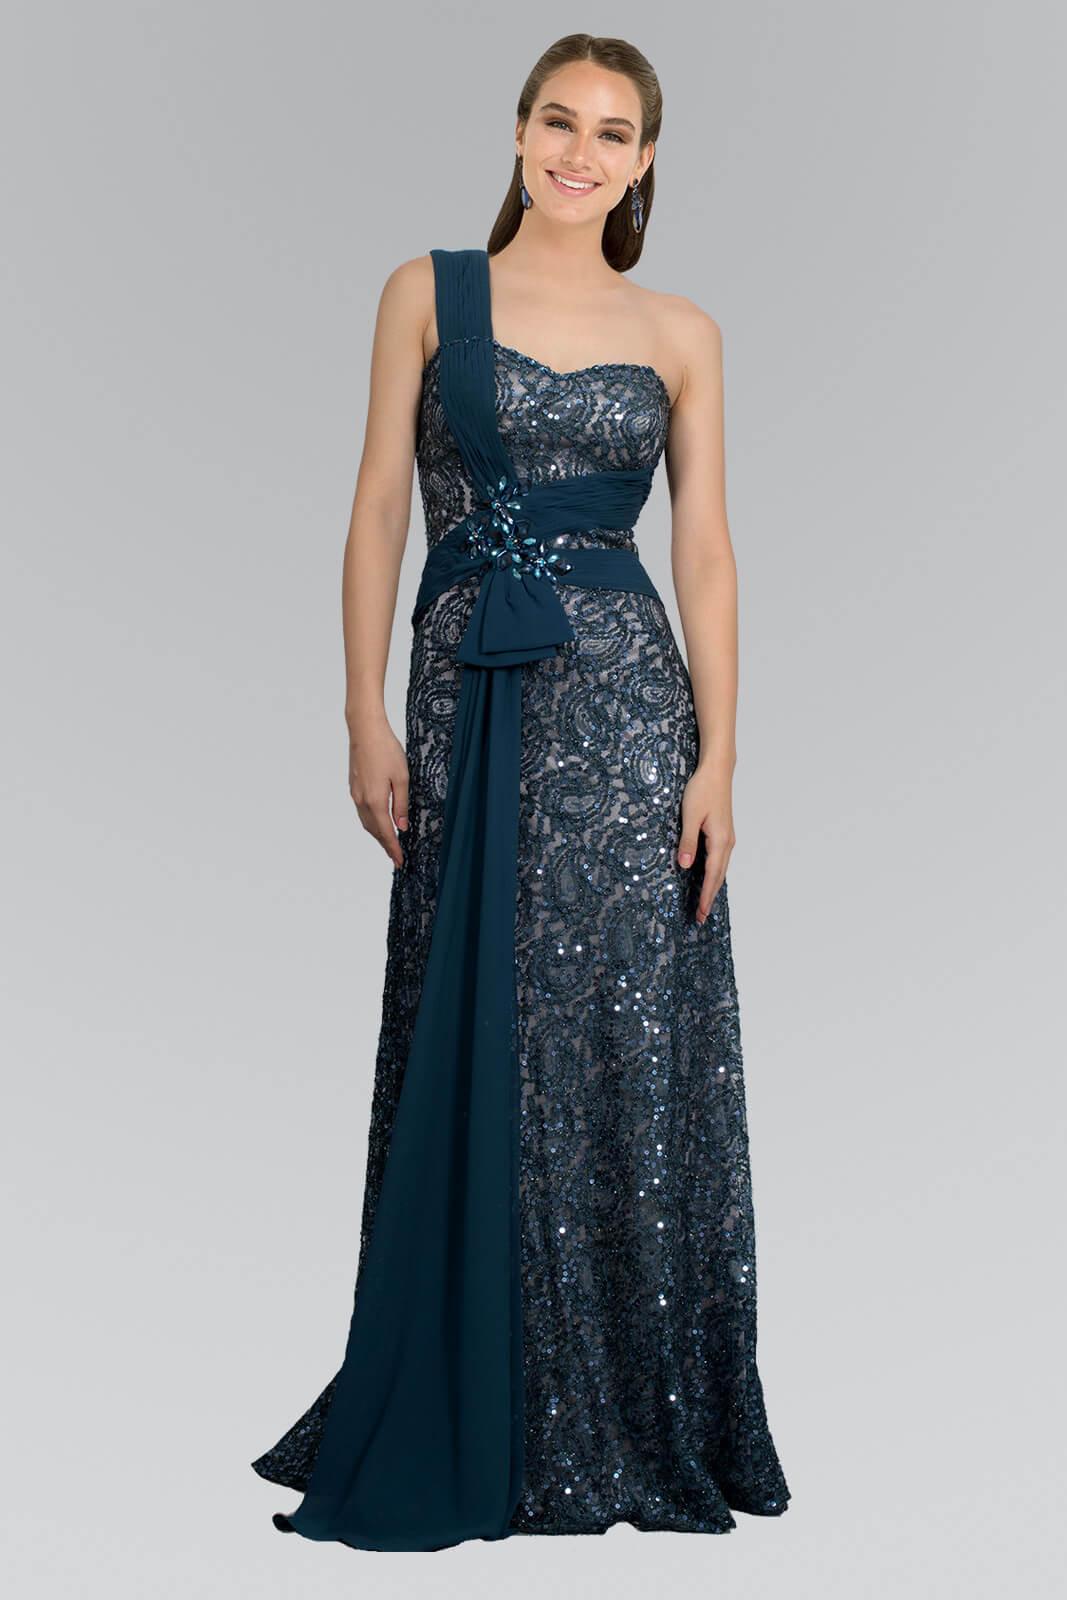 Long Formal Fitted Prom Dress - The Dress Outlet Elizabeth K